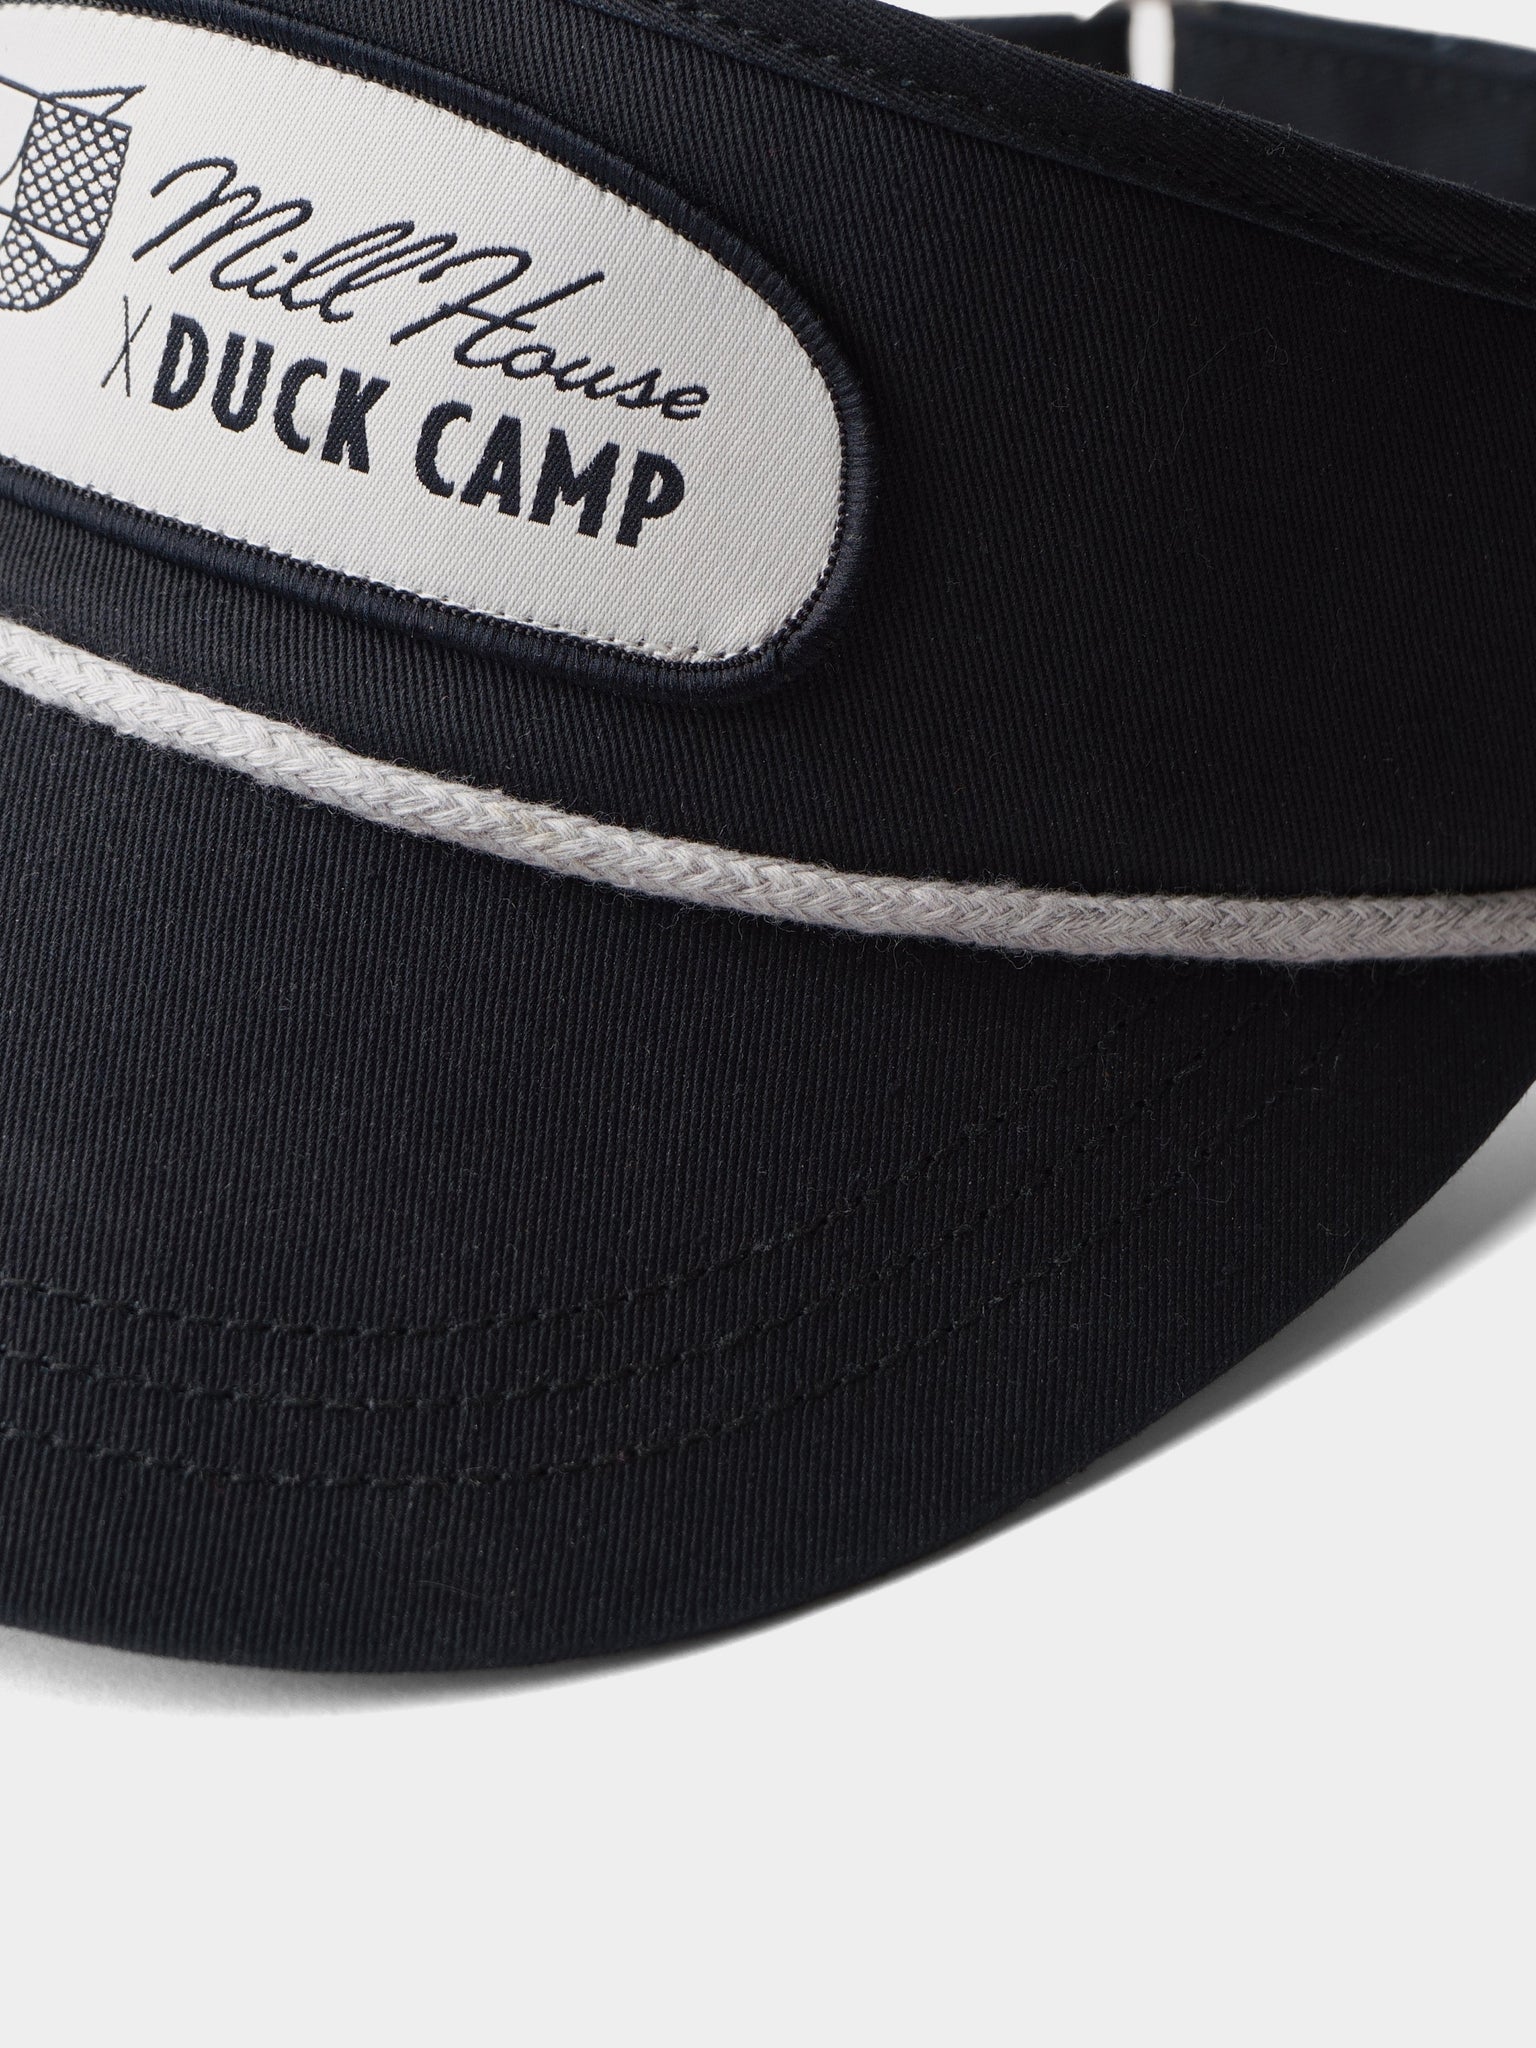 Men's Hats – Duck Camp